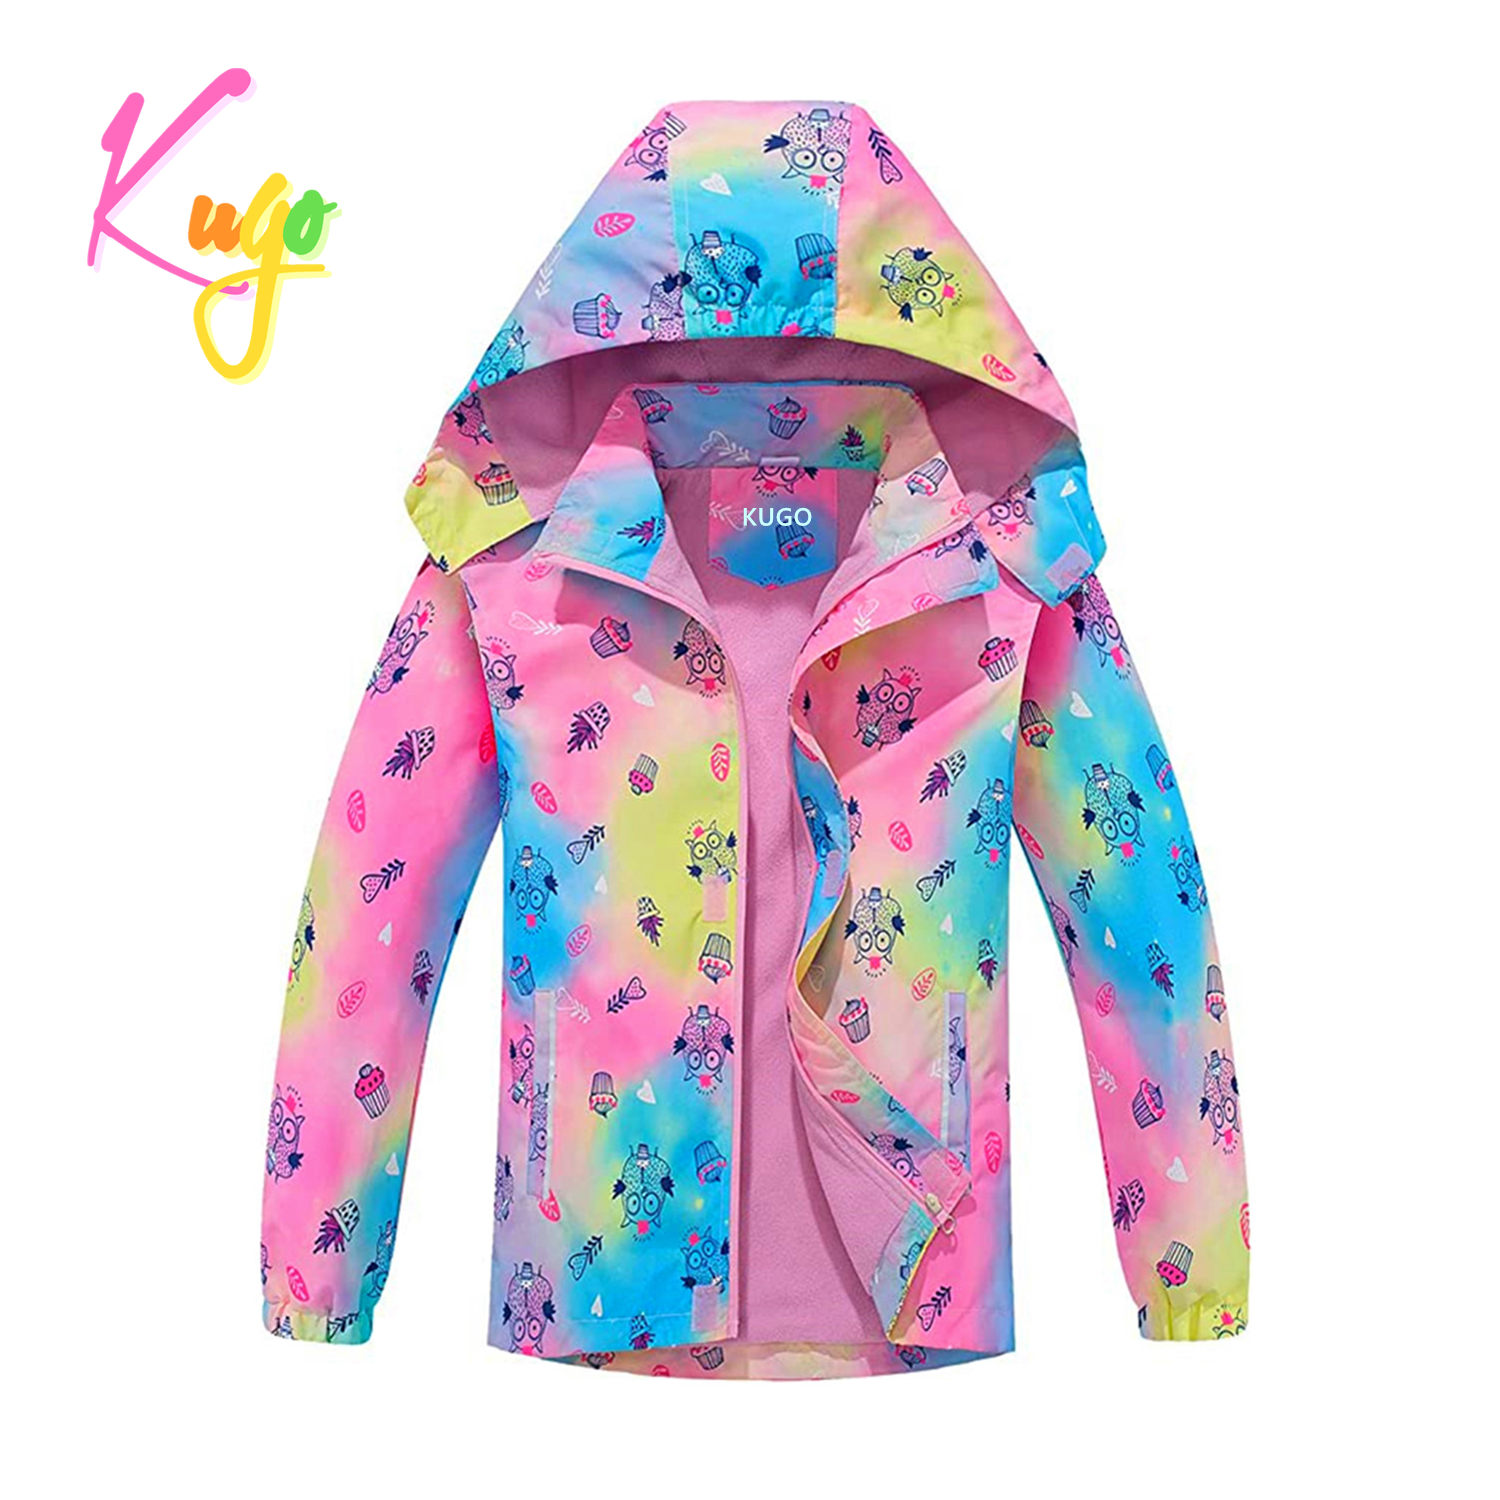 Dívčí jarní, podzimní bunda - KUGO B2850, růžová Barva: Růžová, Velikost: 98